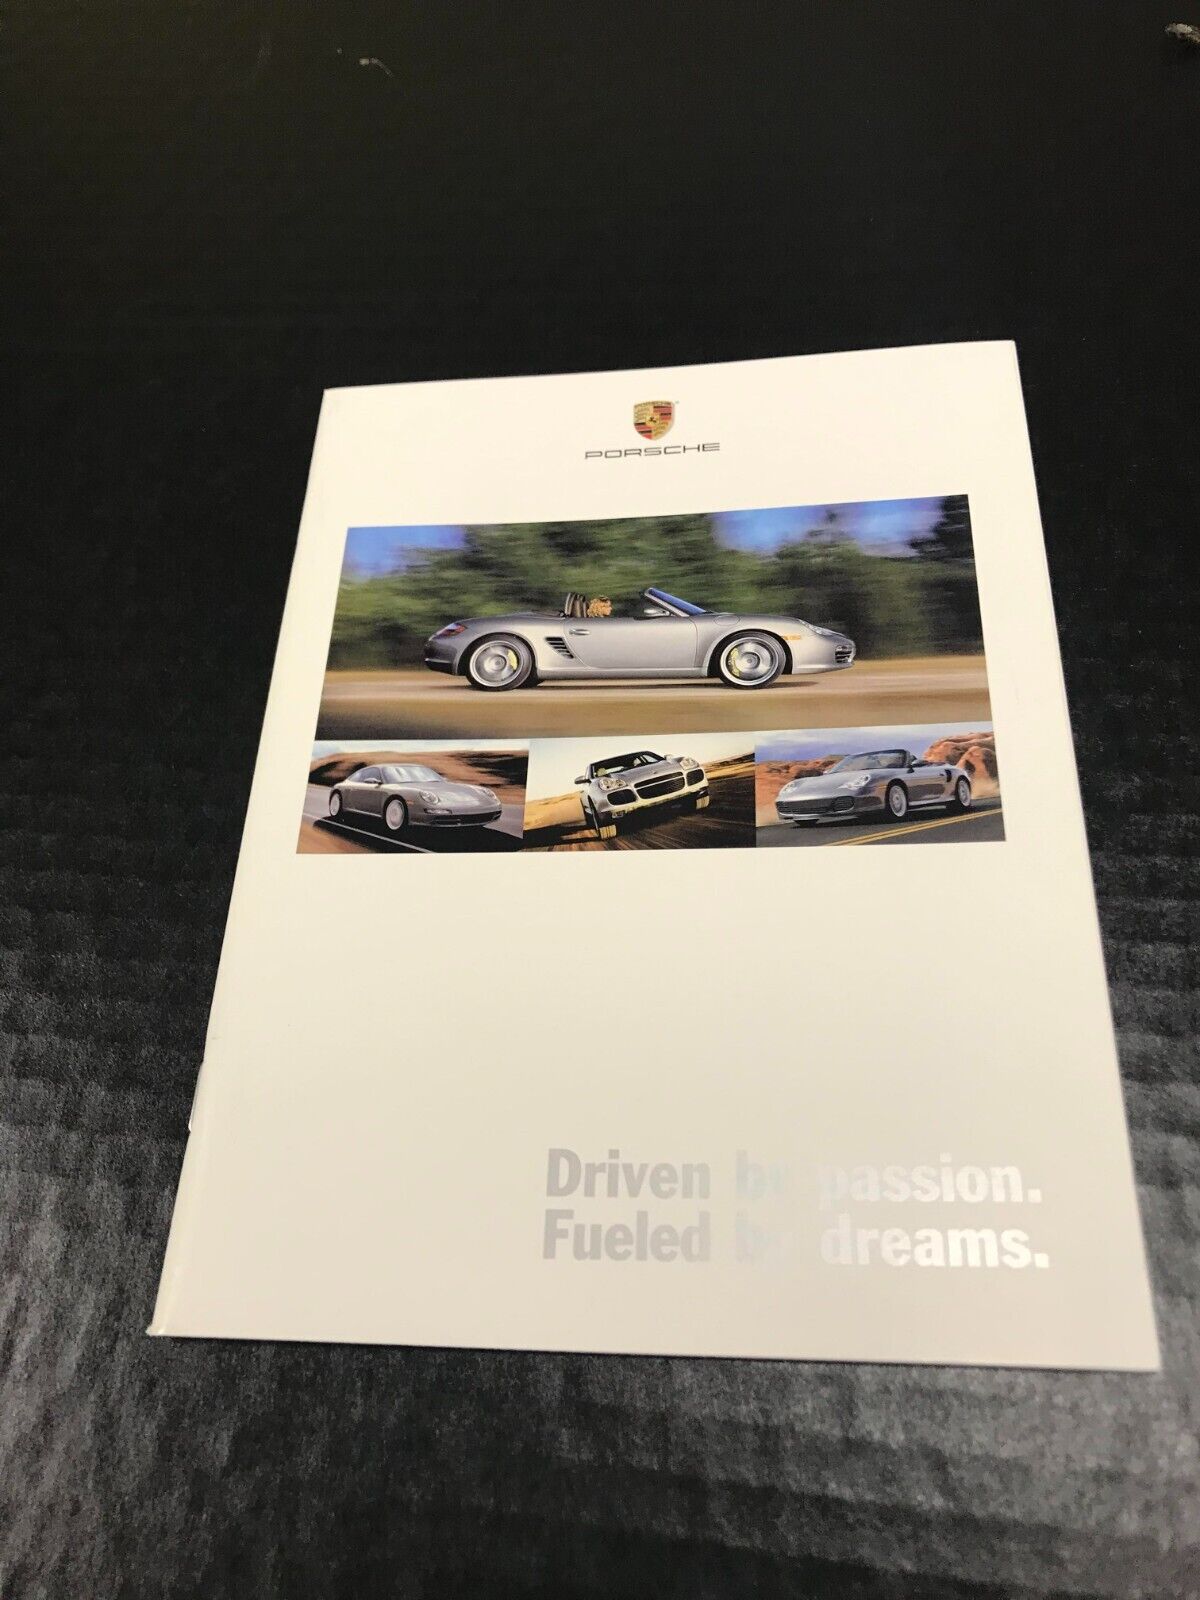 2004 Porsche Driven By Passion Car Sales Brochure